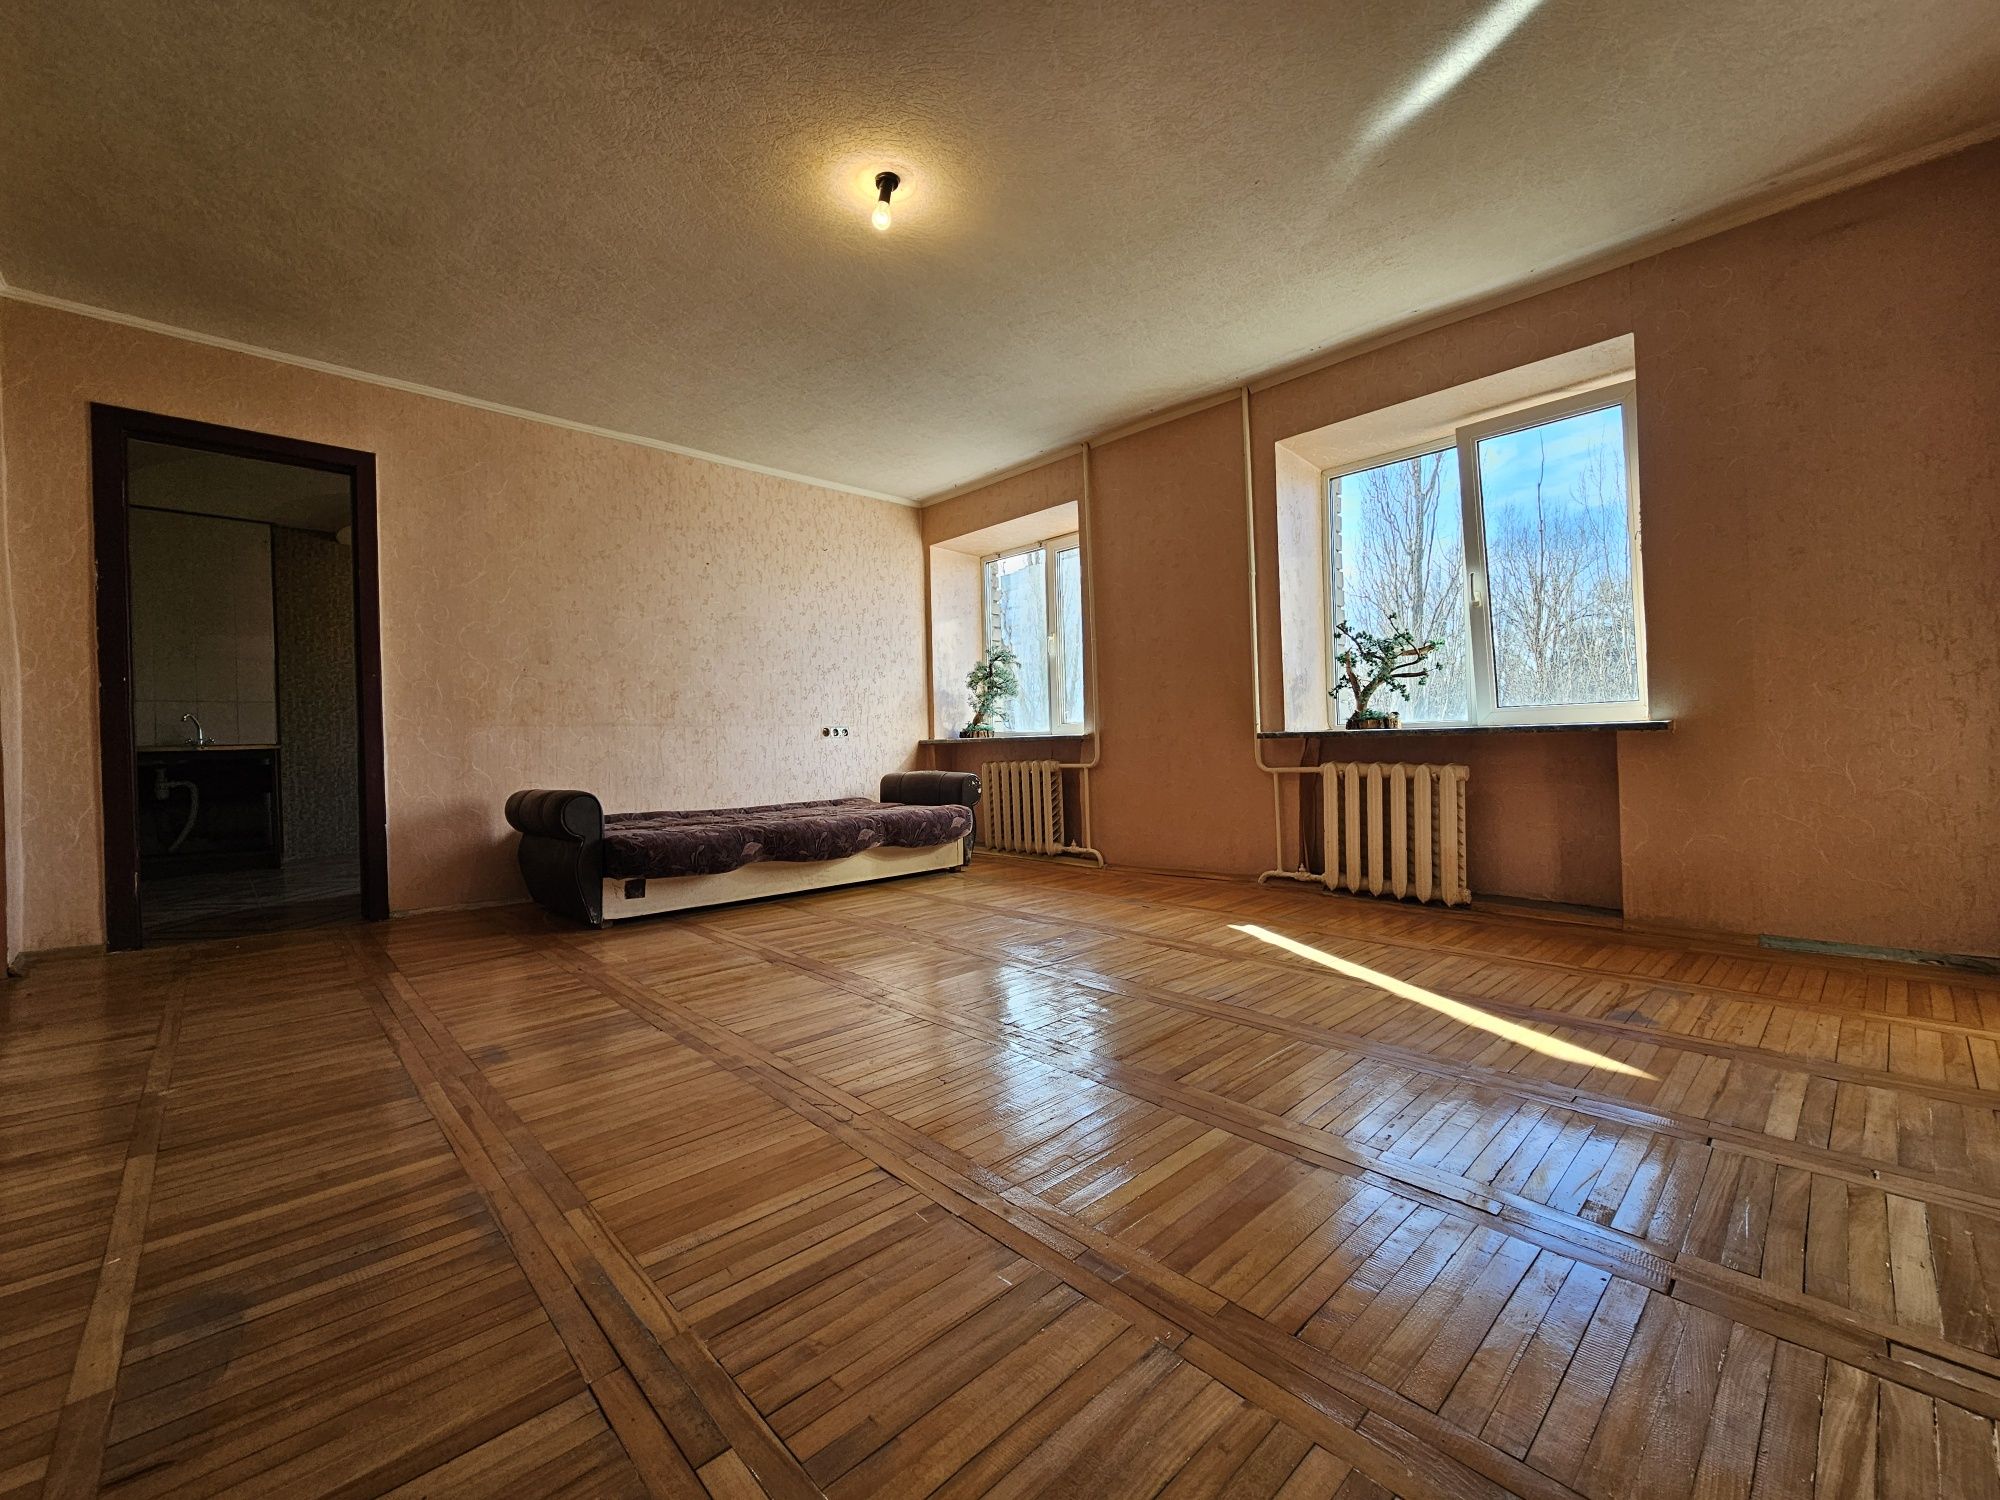 Продам квартиру в Приднепровске Кирпичный дом